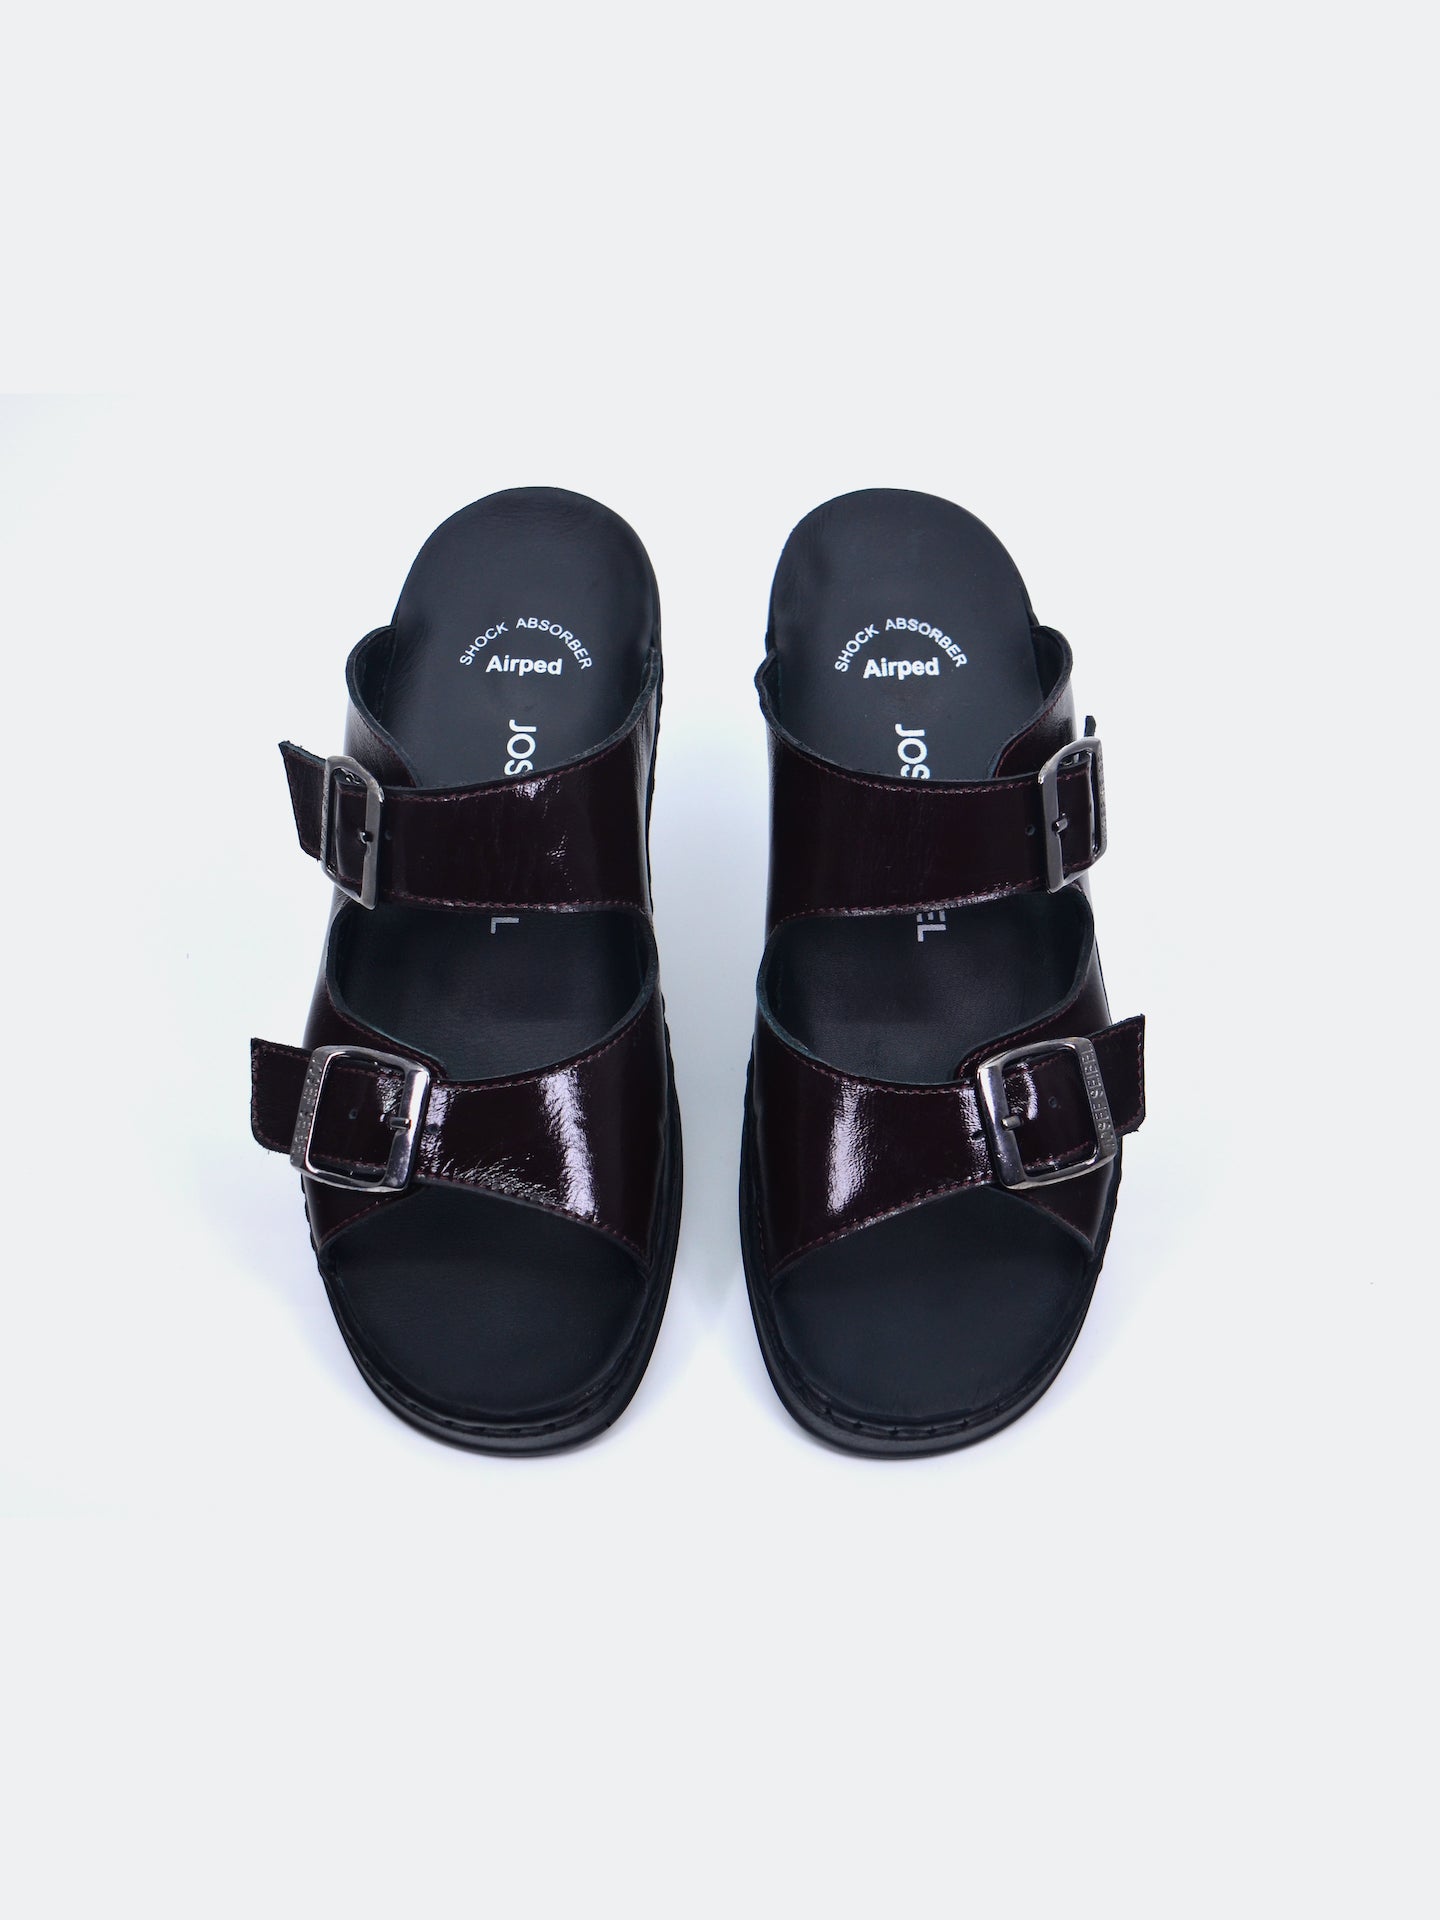 Josef Seibel Women's Flat Sandals #color_Maroon